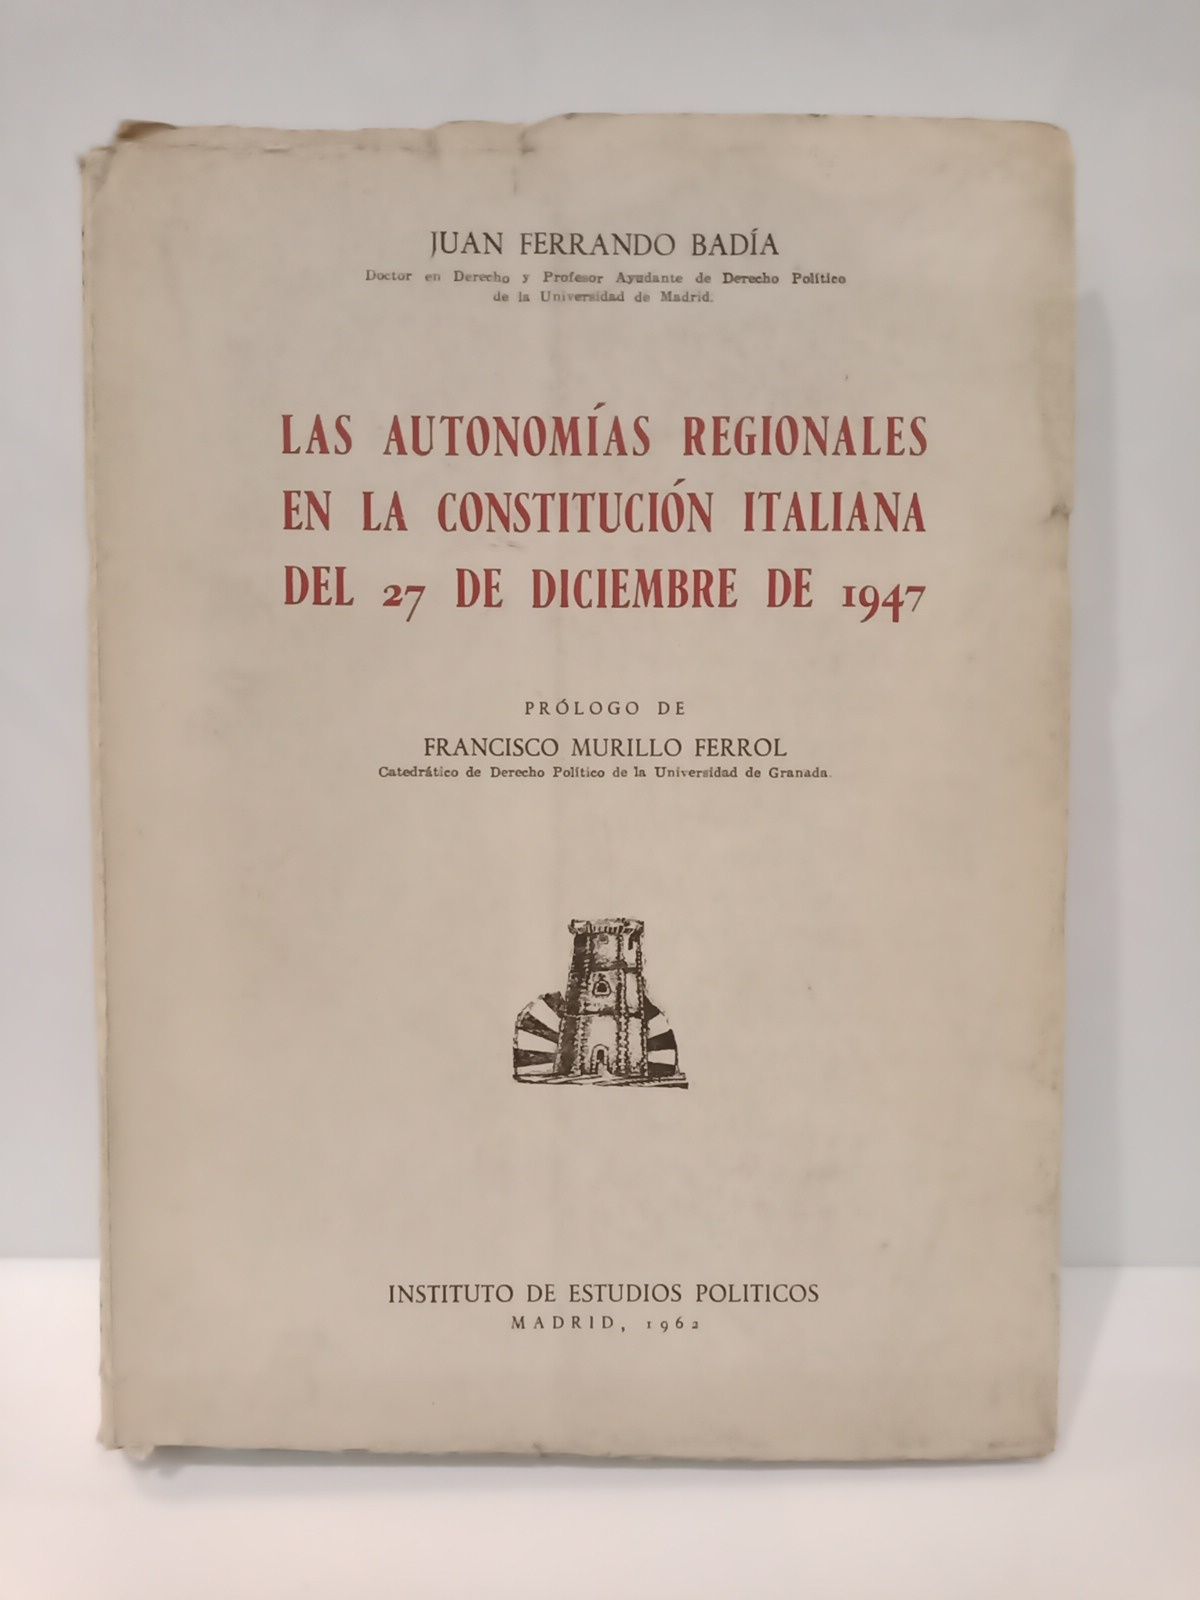 FERRANDO BADIA, Juan - Las autonomas regionales en la Constitucin Italiana del 27 de dicuembre de 1947 /  Prol. de Francisco Murillo Ferrol